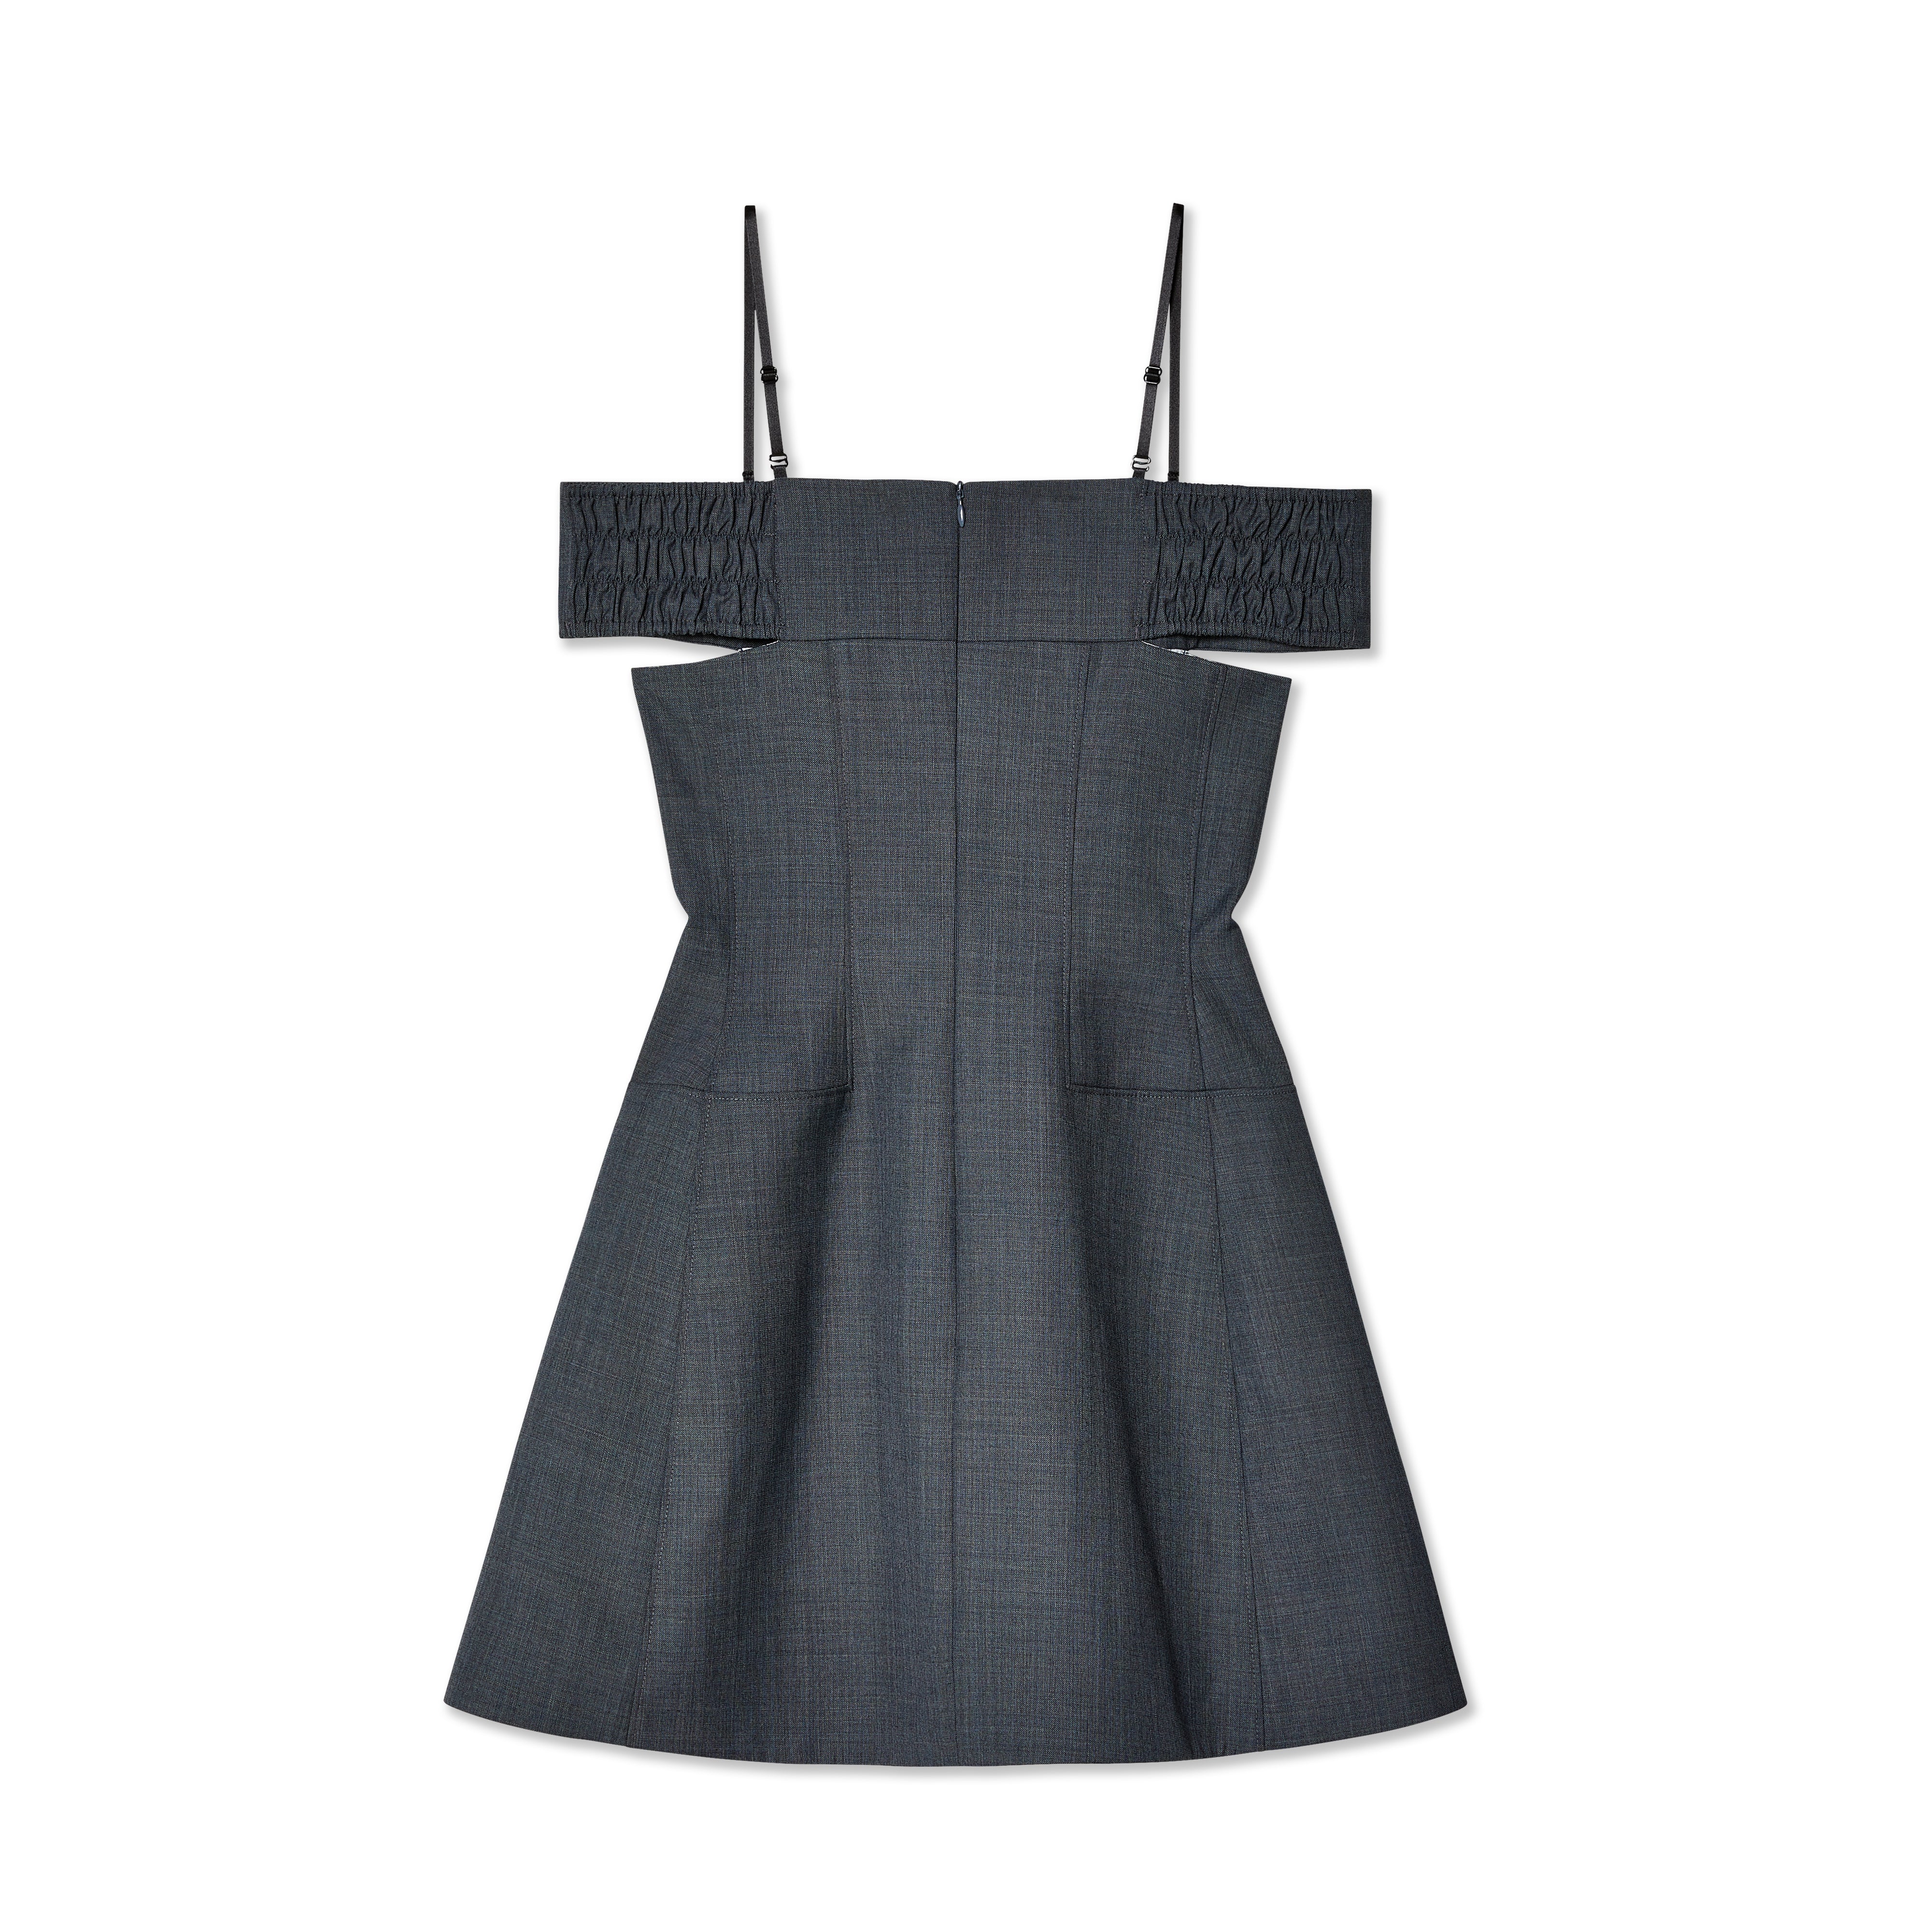 SHUSHU/TONG - Women's Curved One-Shoulder Dress - (Grey)